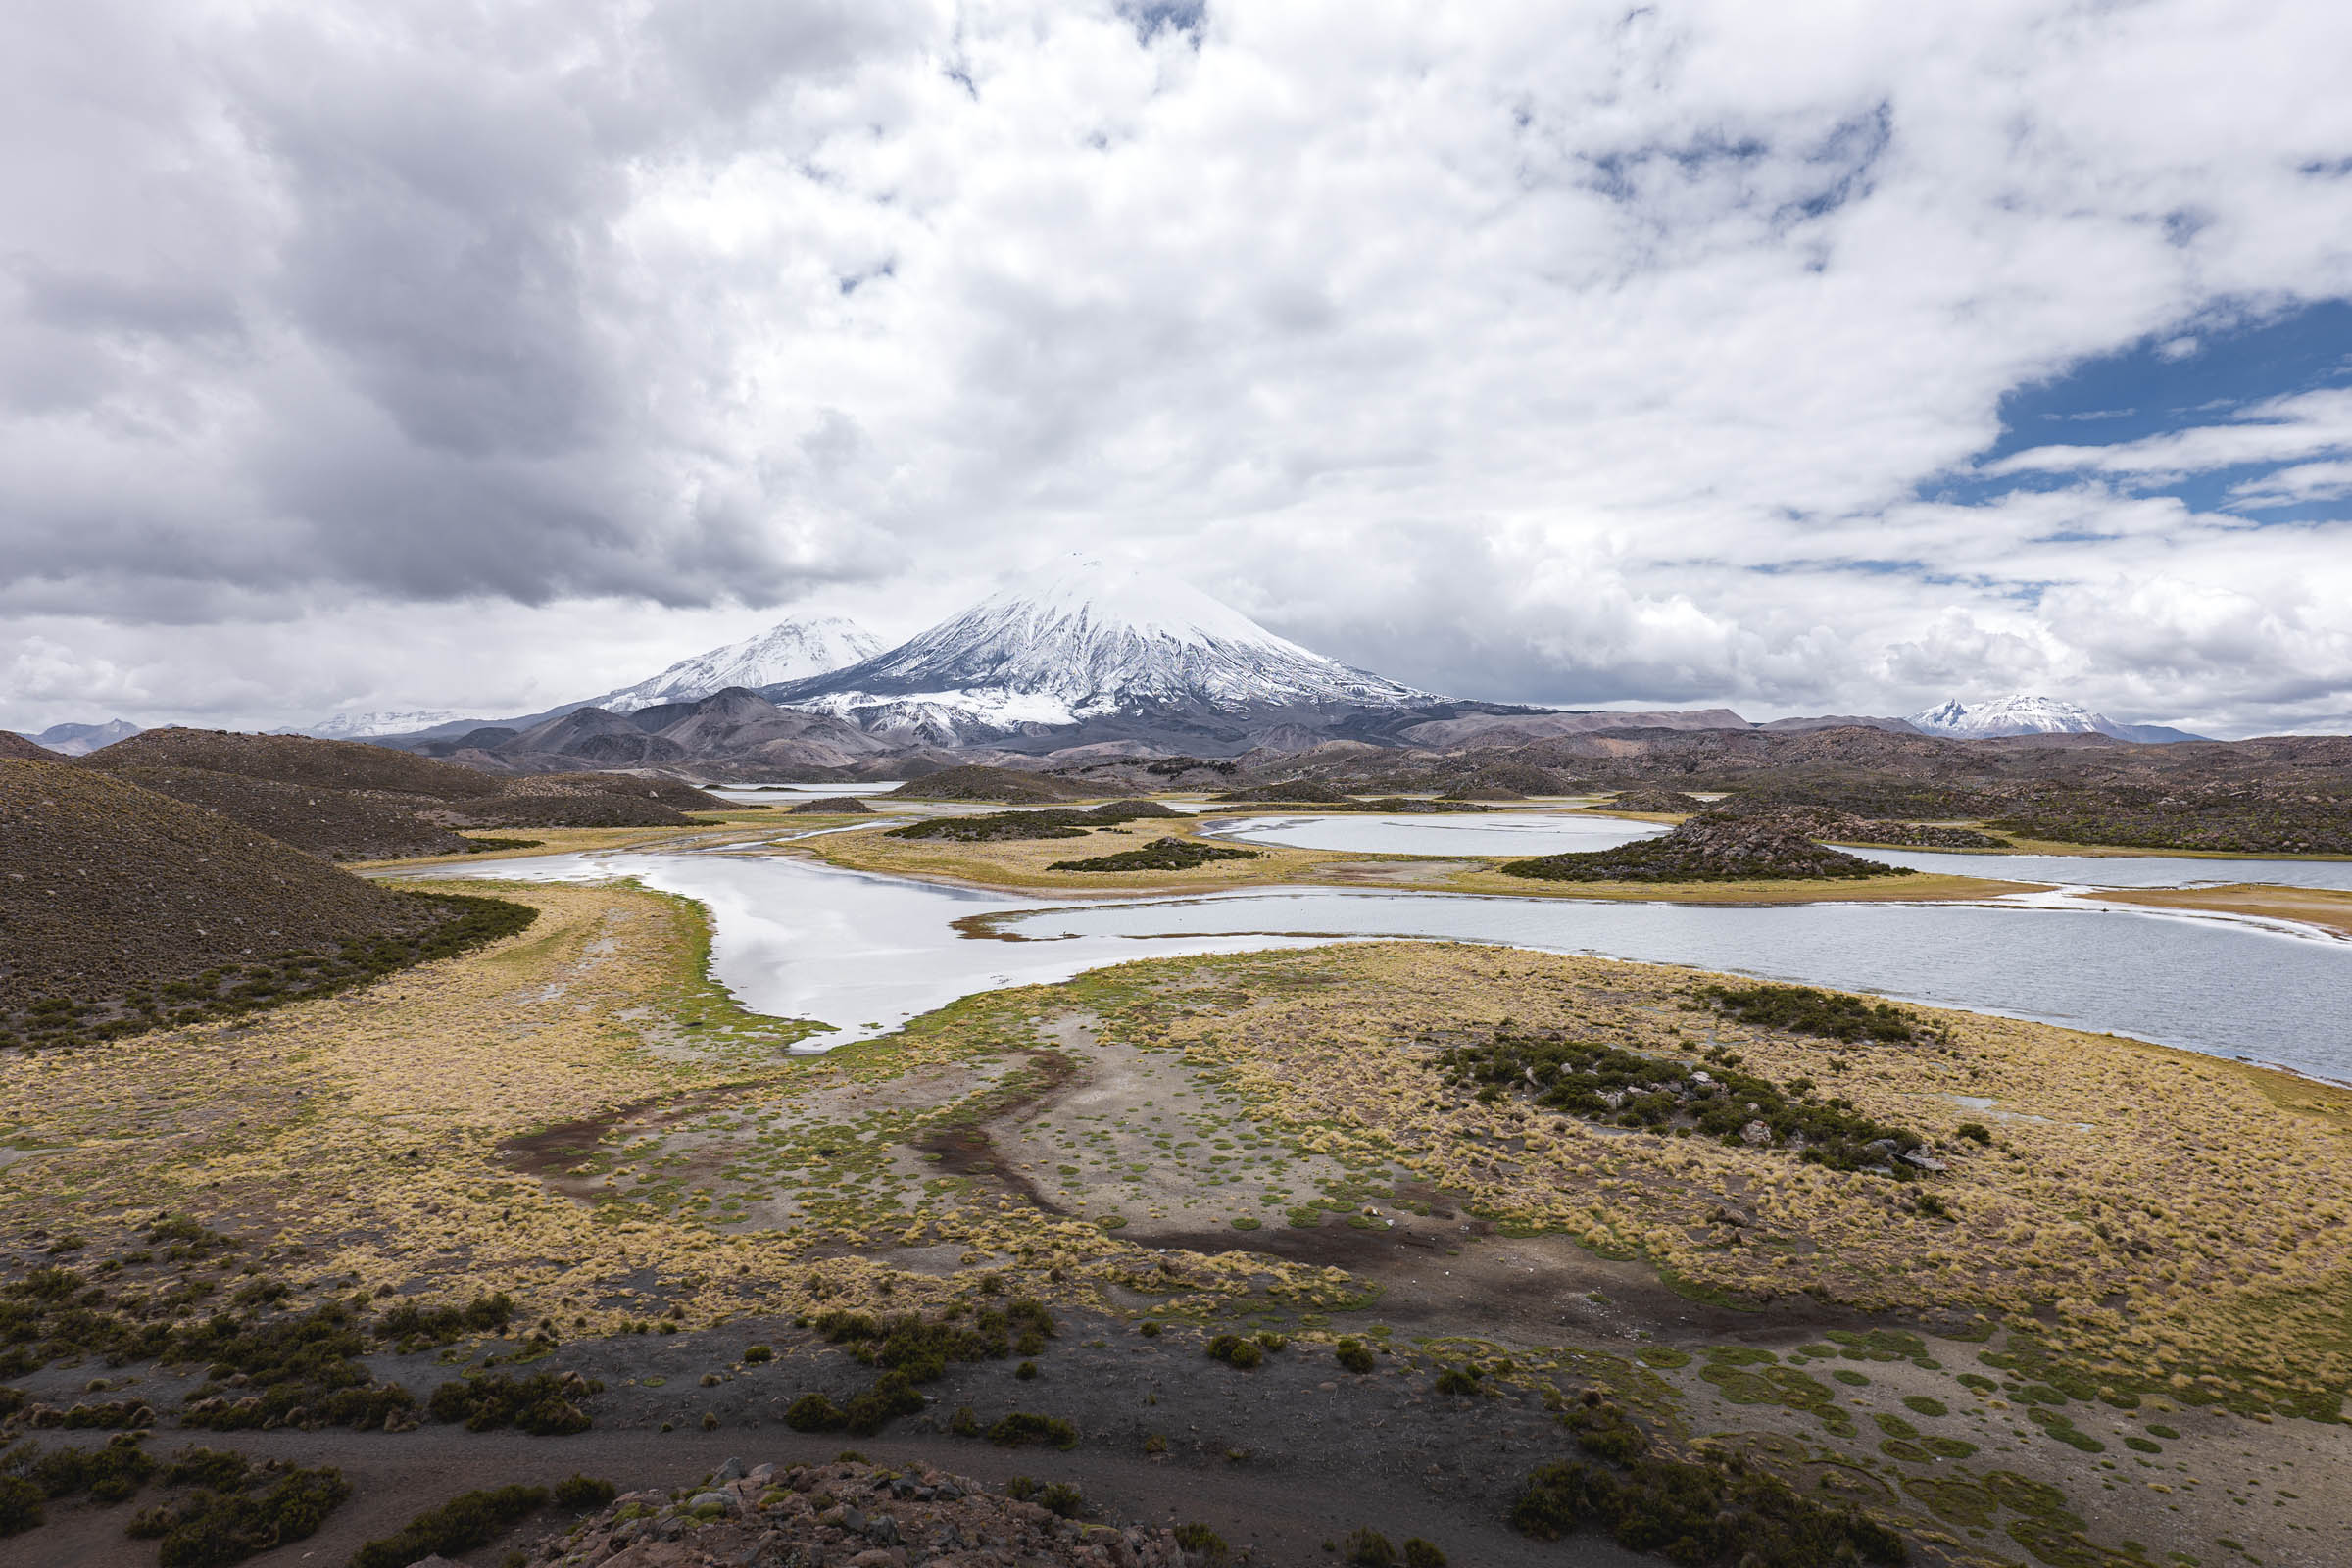 Una aventura con paisajes increíbles: recorriendo todos los parques nacionales del norte de Chile